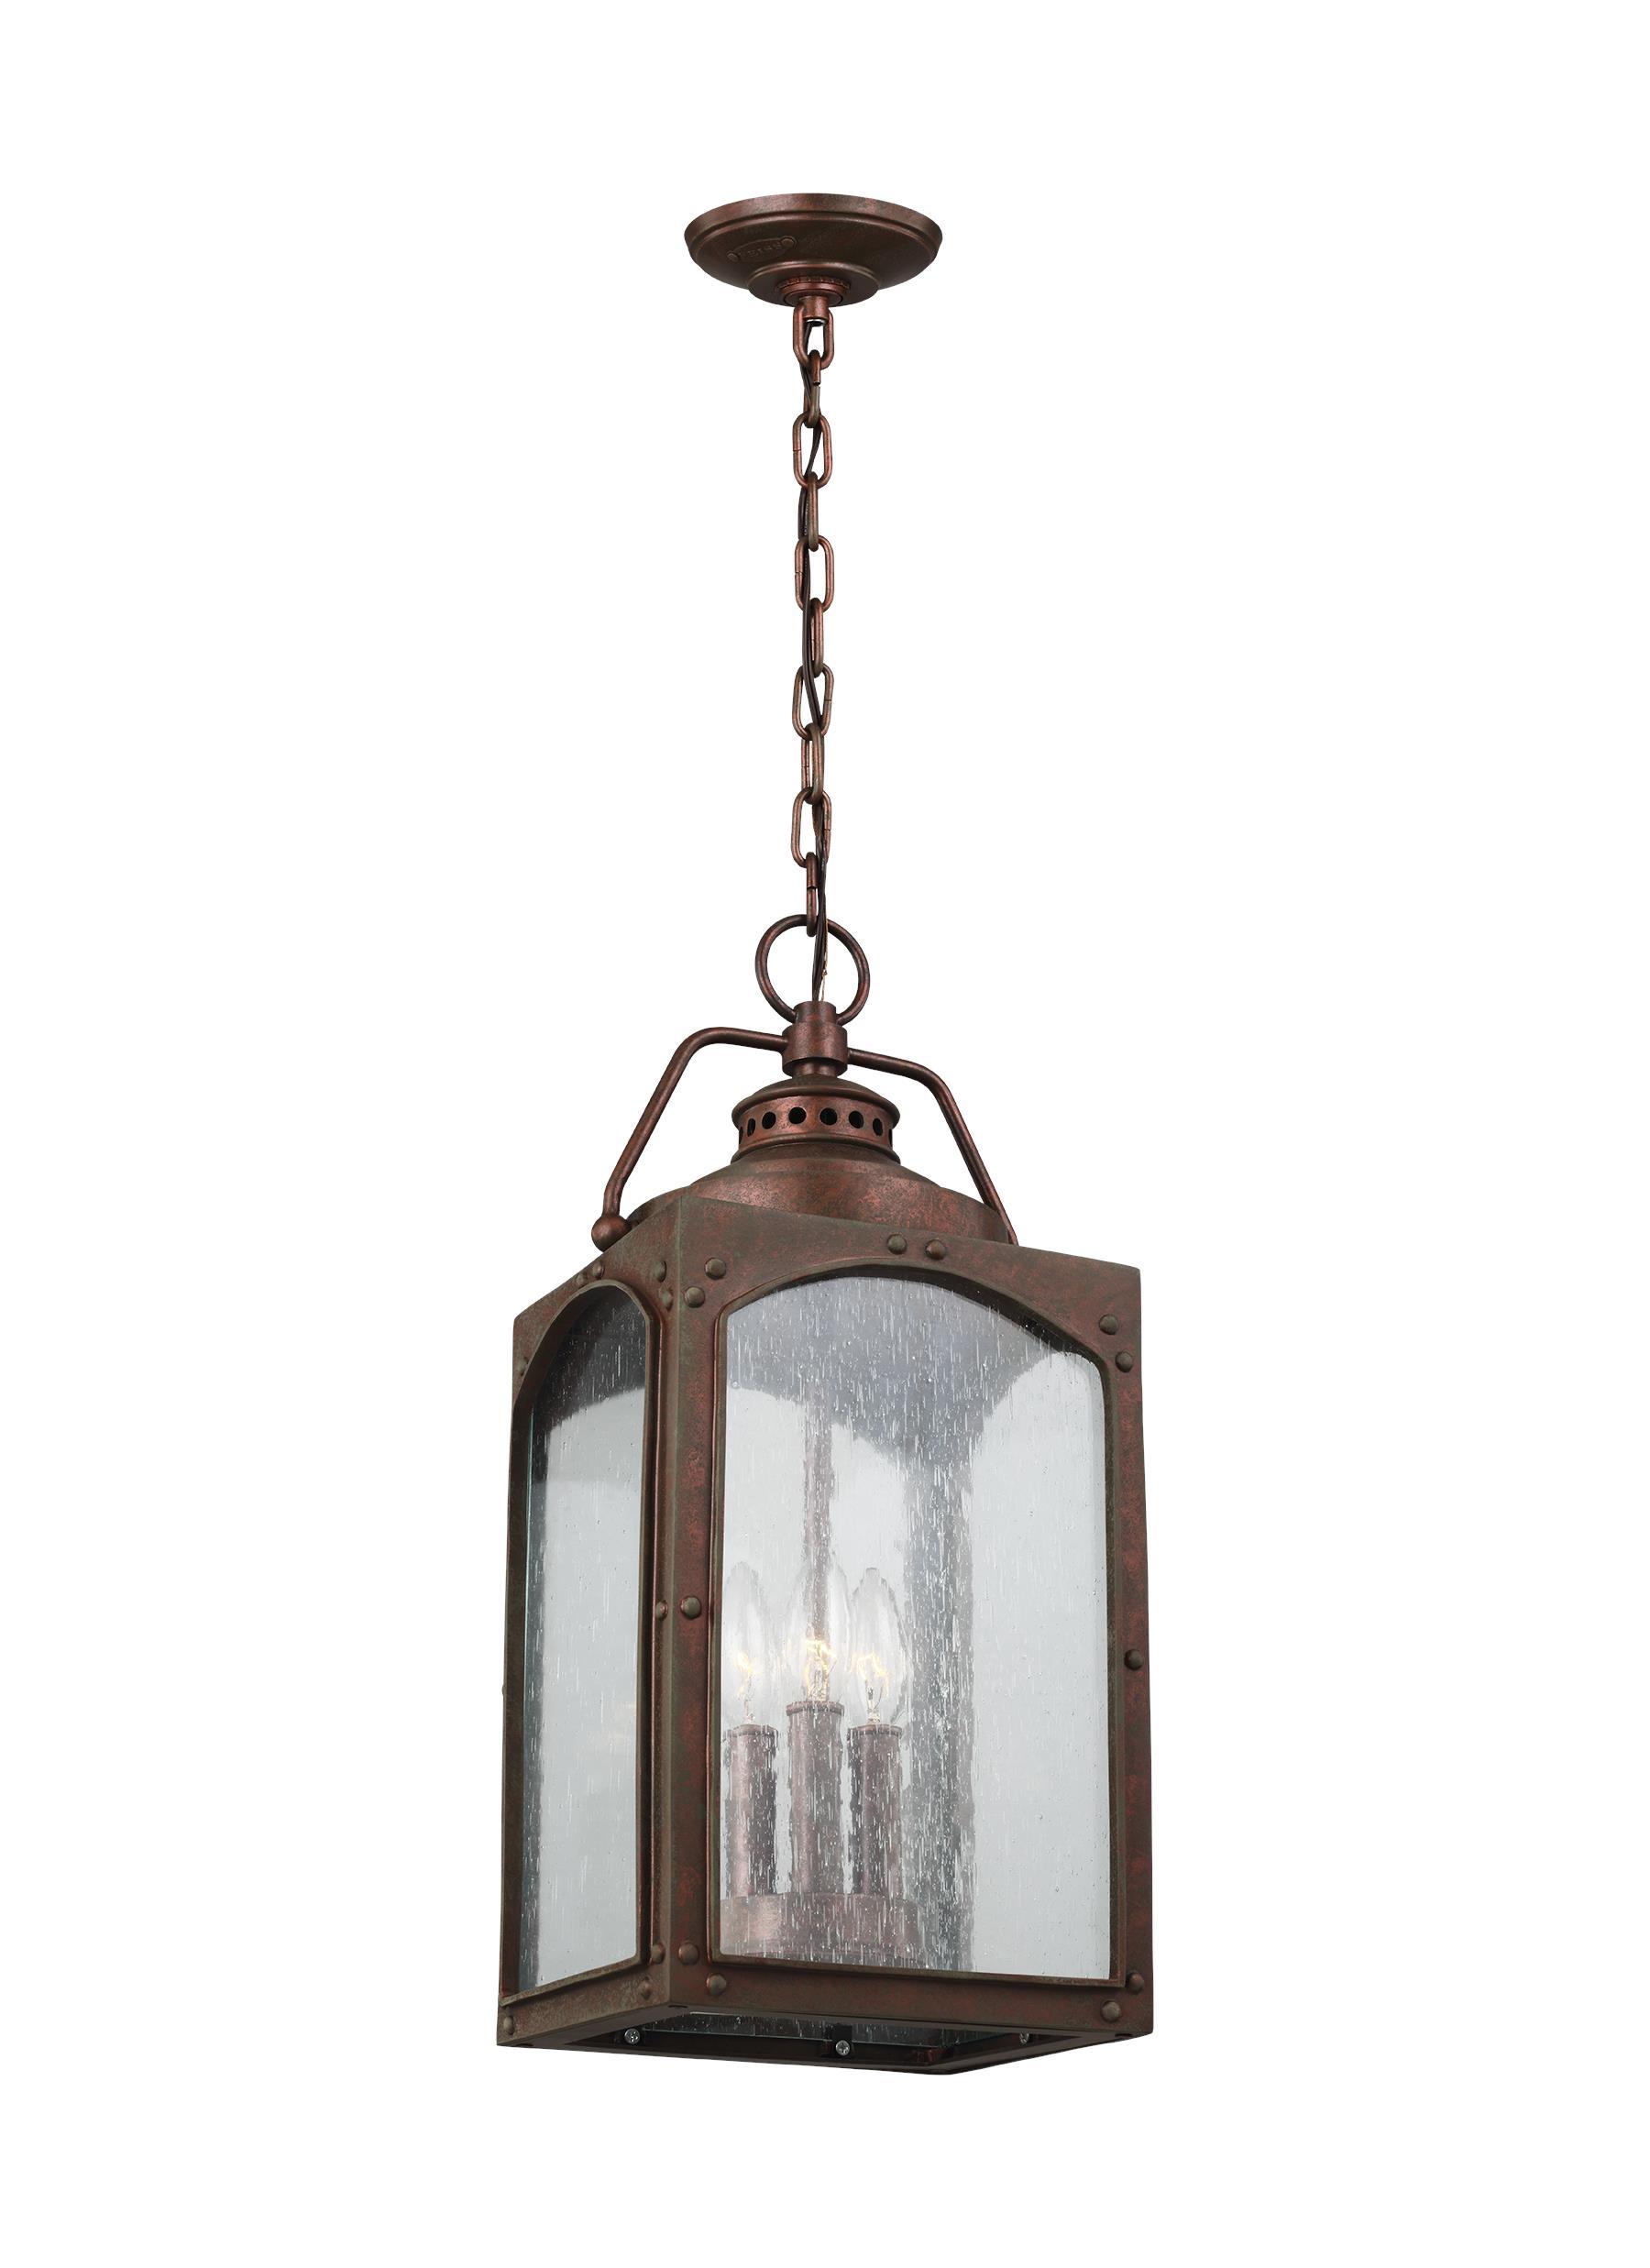 Randhurst Copper Oxide 3-Light Hanging Lantern Outdoor Feiss 